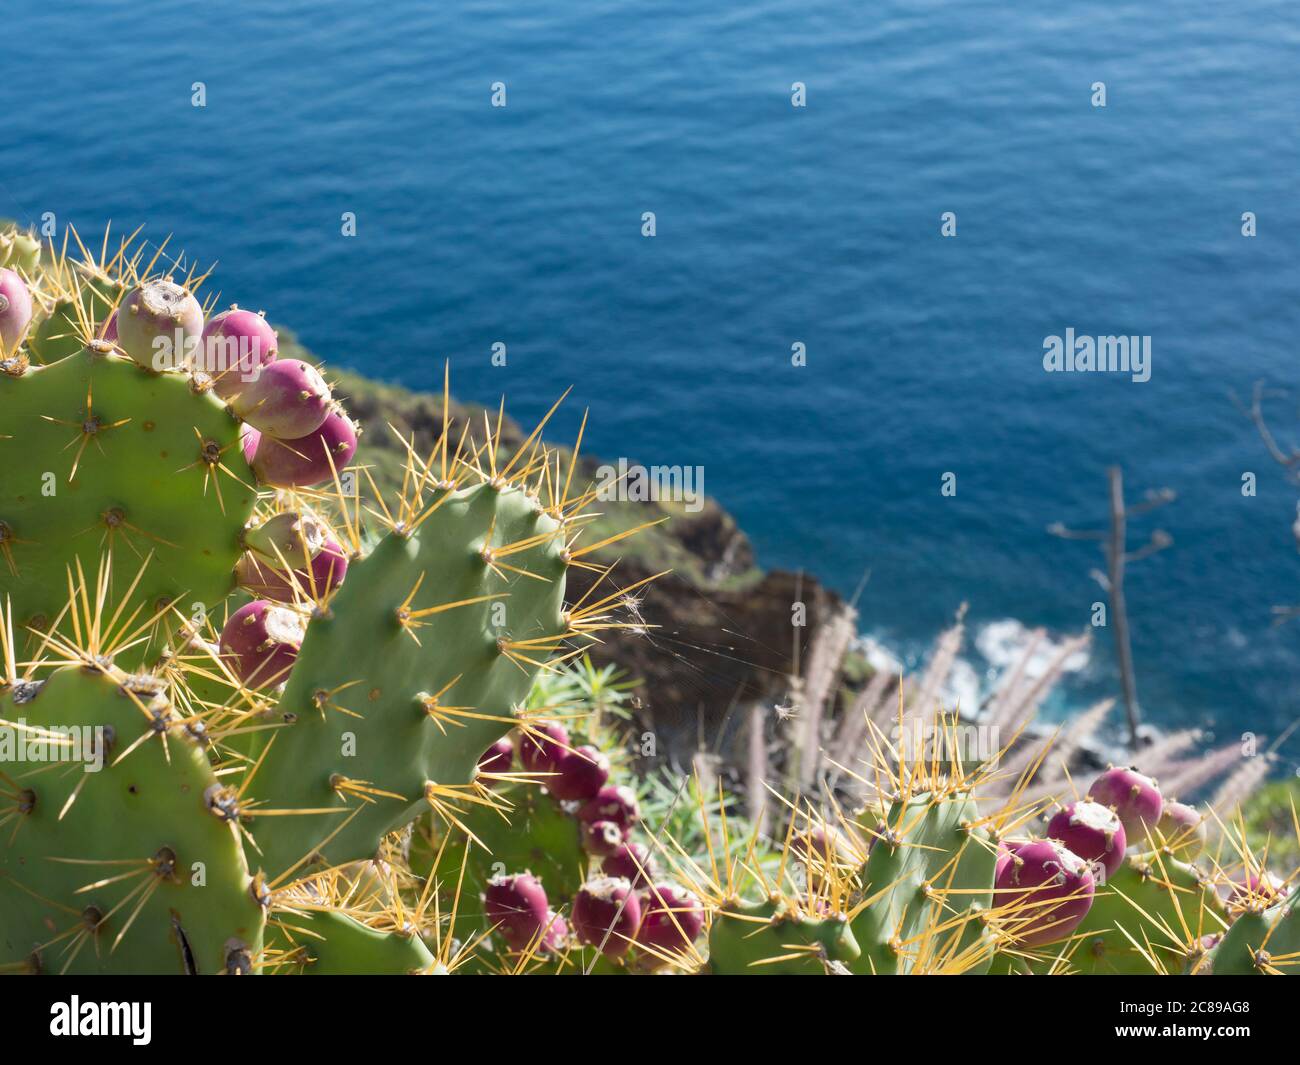 Nahaufnahme reifen rot indischen Feige opuntia tropic Kaktus Frucht auf Pflanze  stachelige Birne gegen blaues Meer, atlantik Hintergrund Stockfotografie -  Alamy